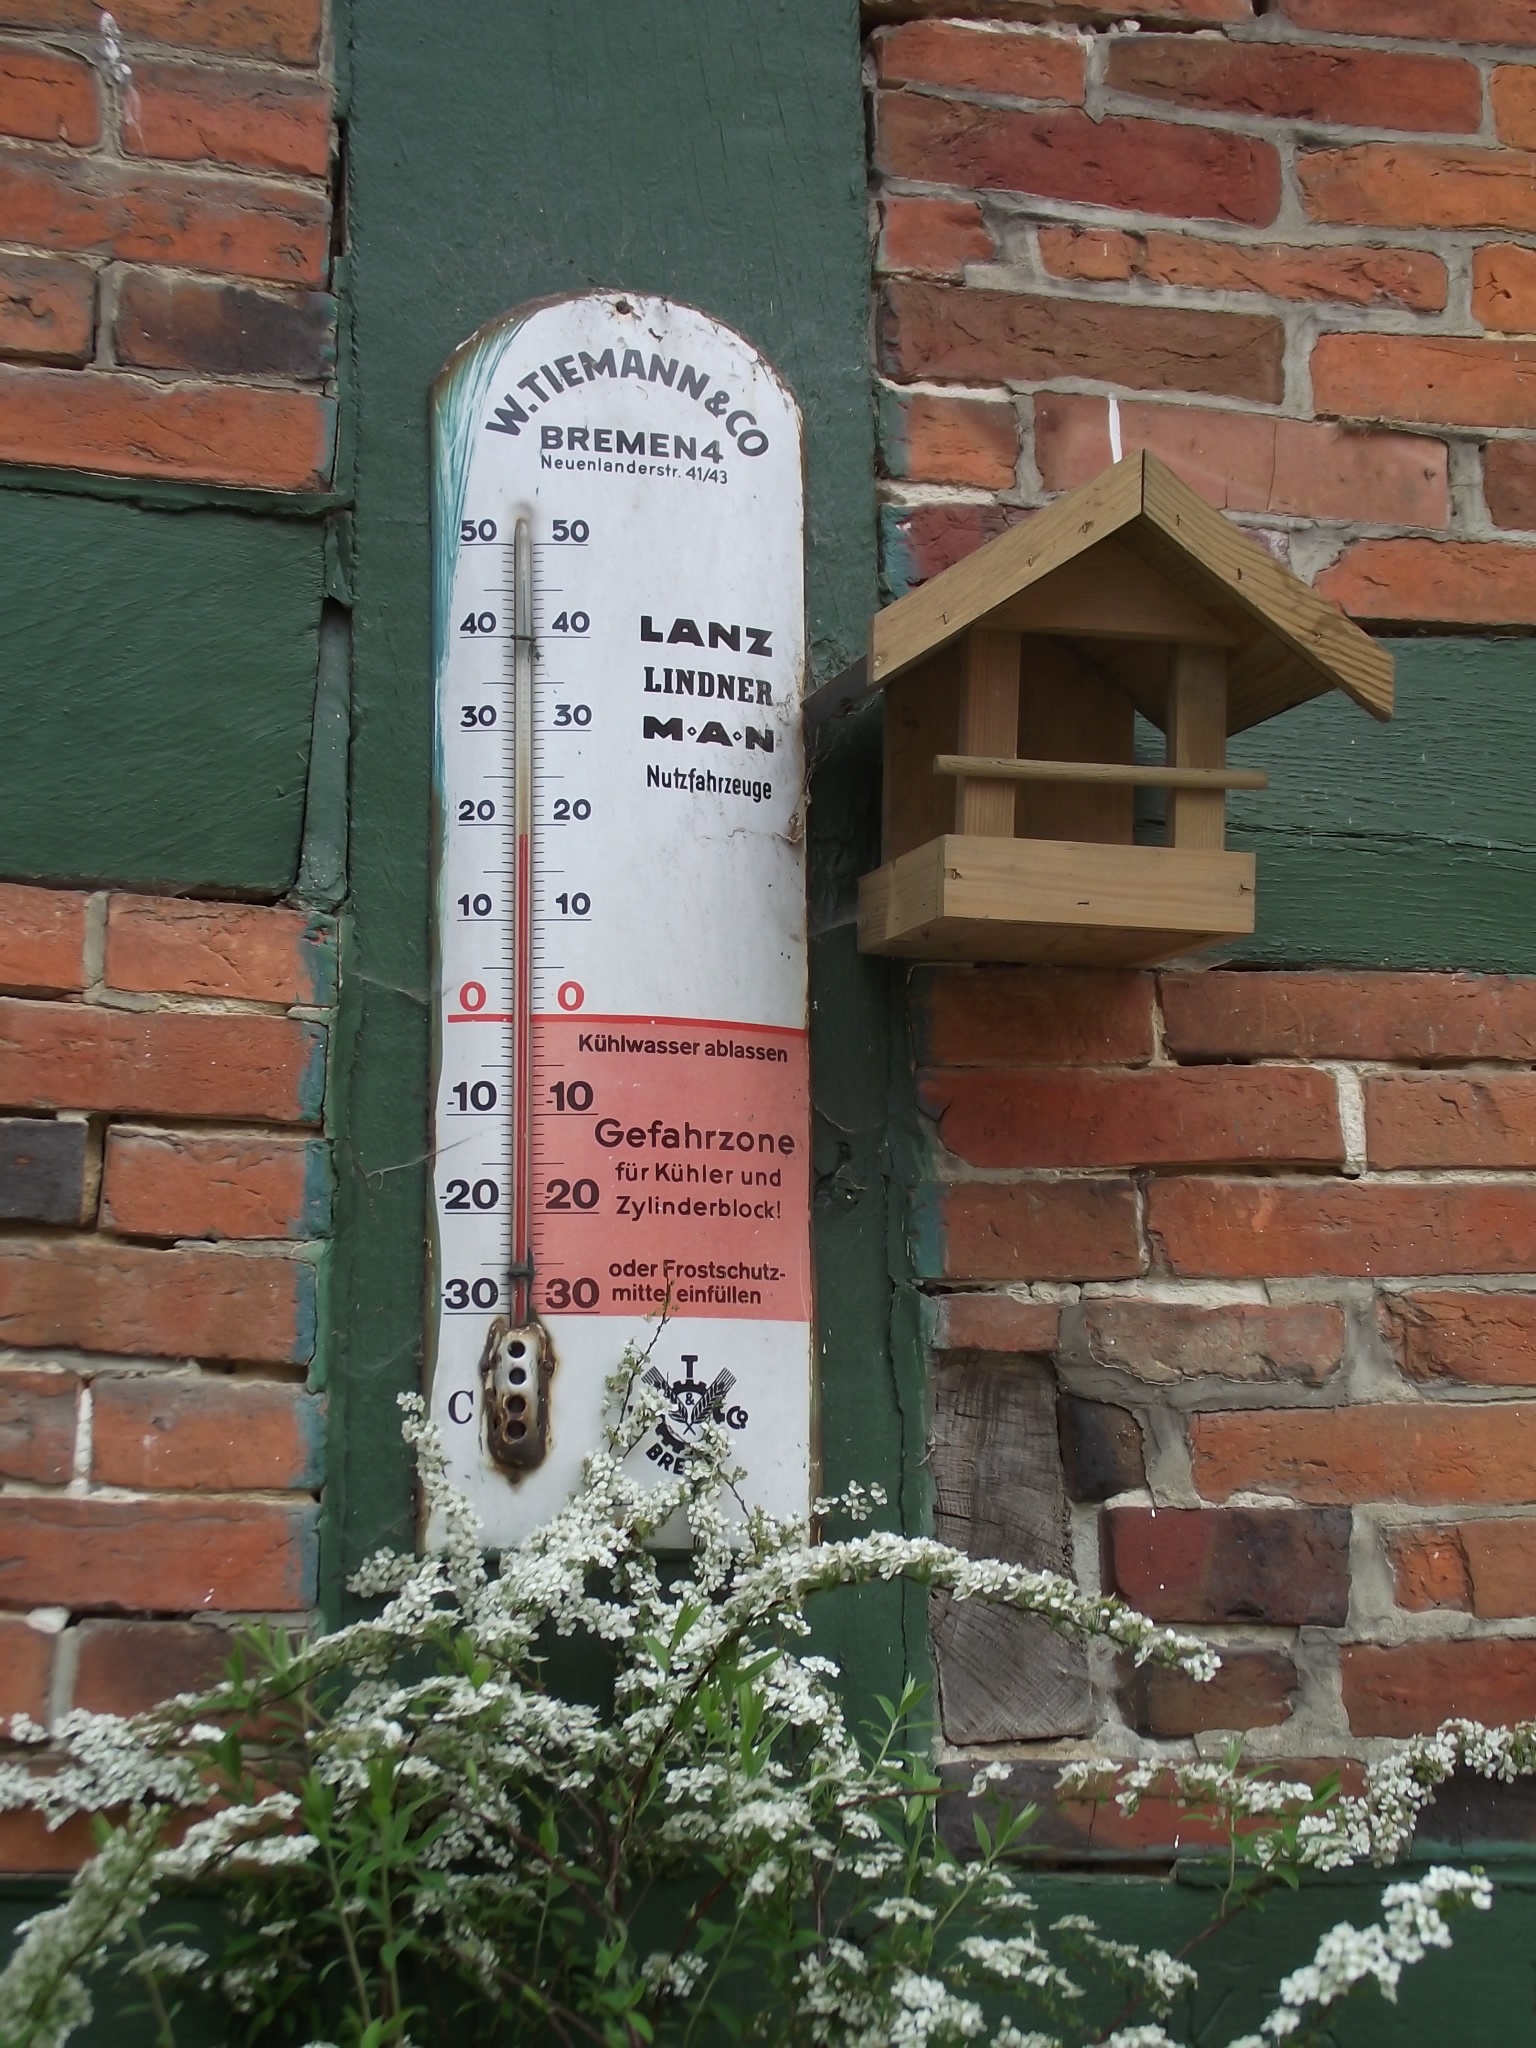 Dötlinger Gartenkultour 2012 - Hof Schweers - altes Thermometer - aktuell 19°C